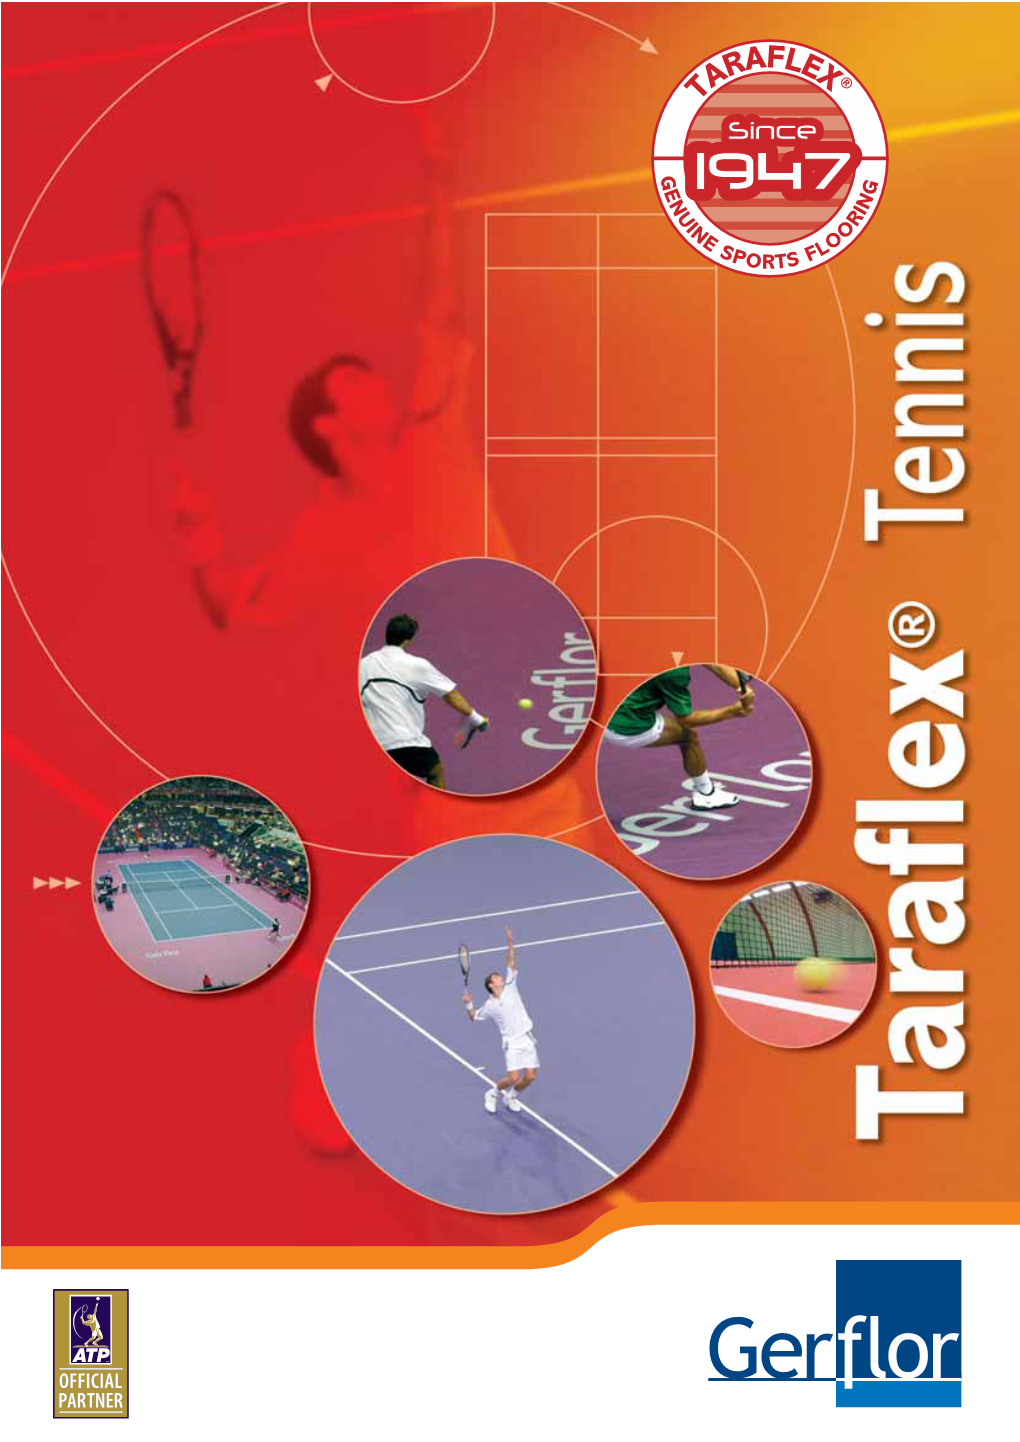 Taraflex® Tennis Engineered Flooring